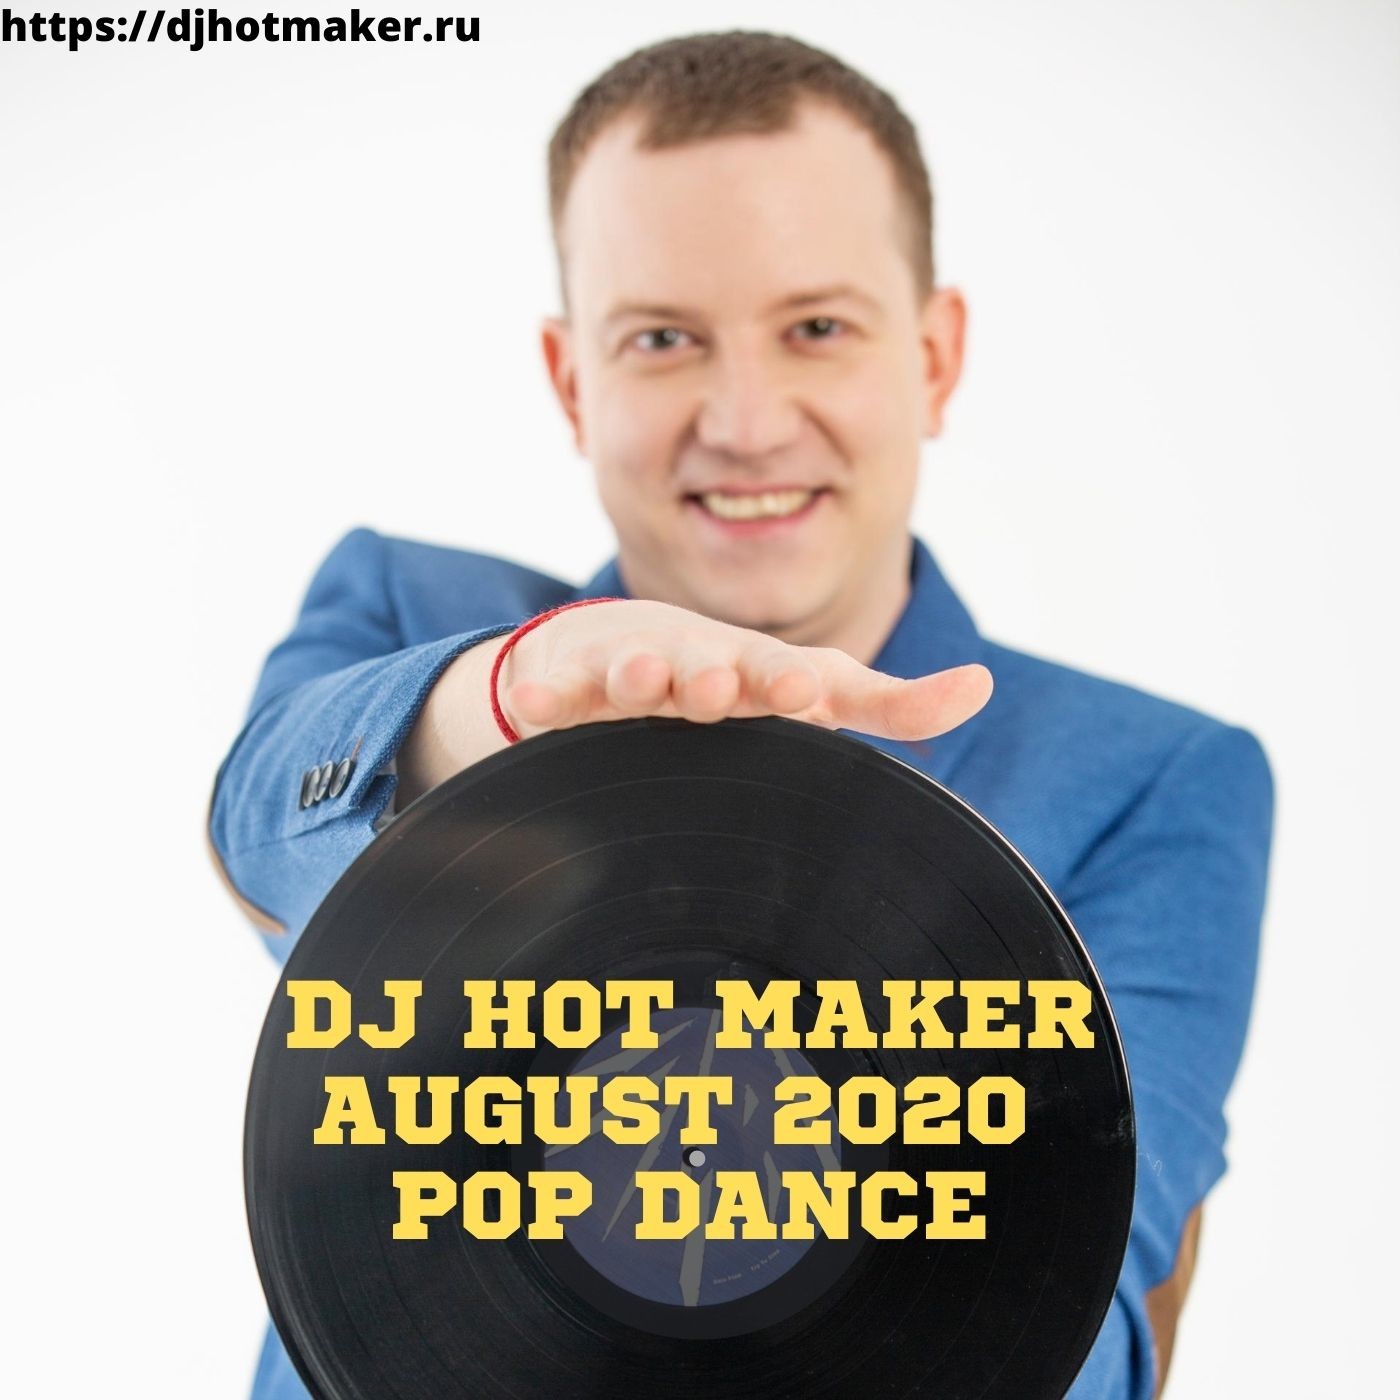 DJ Hot Maker - August 2020 Pop Dance Promo